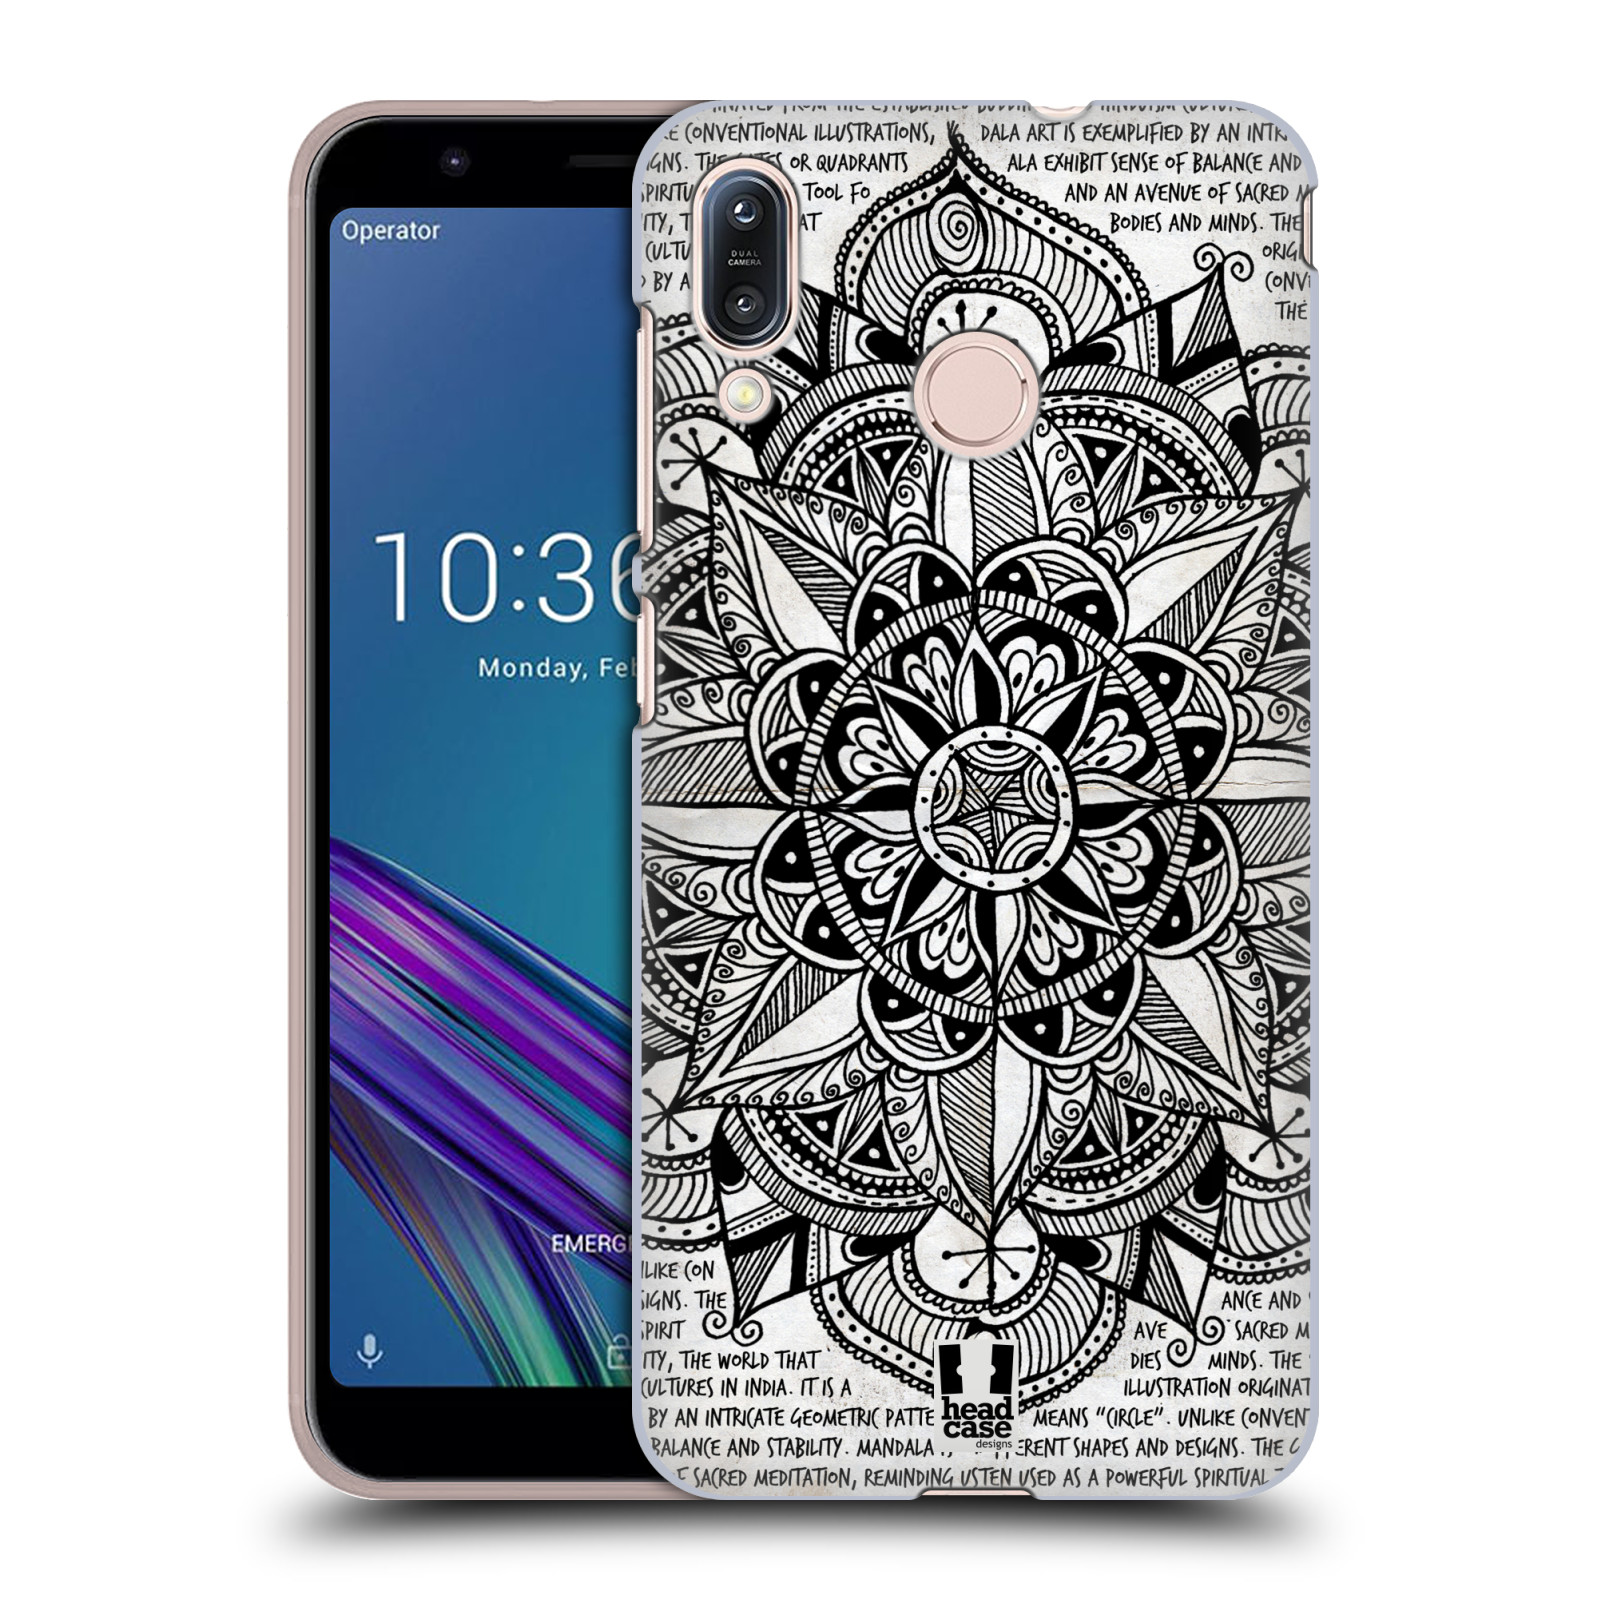 Pouzdro na mobil Asus Zenfone Max M1 (ZB555KL) - HEAD CASE - vzor Indie Mandala slunce barevná ČERNÁ A BÍLÁ MAPA